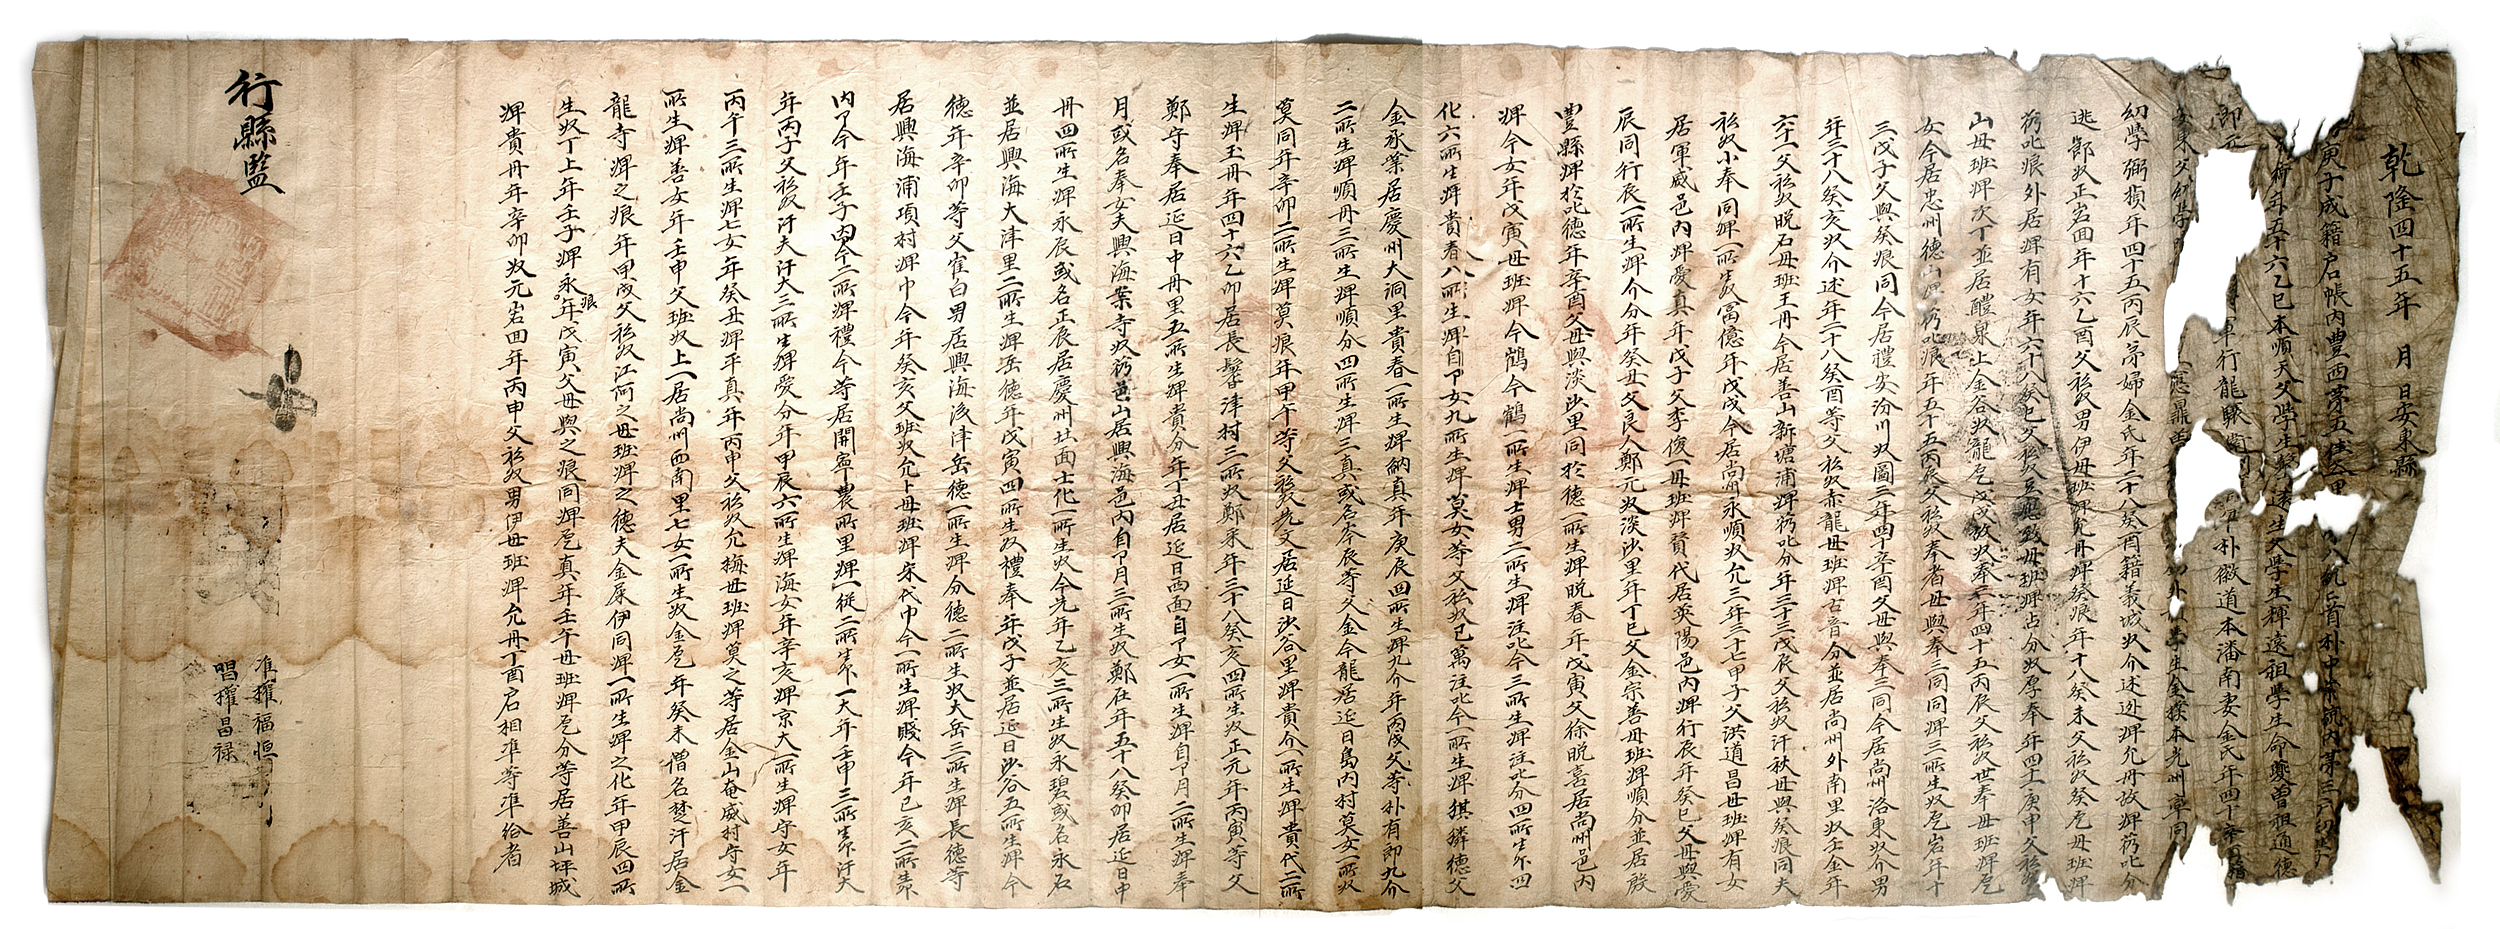 준호구(김필영), 1780)